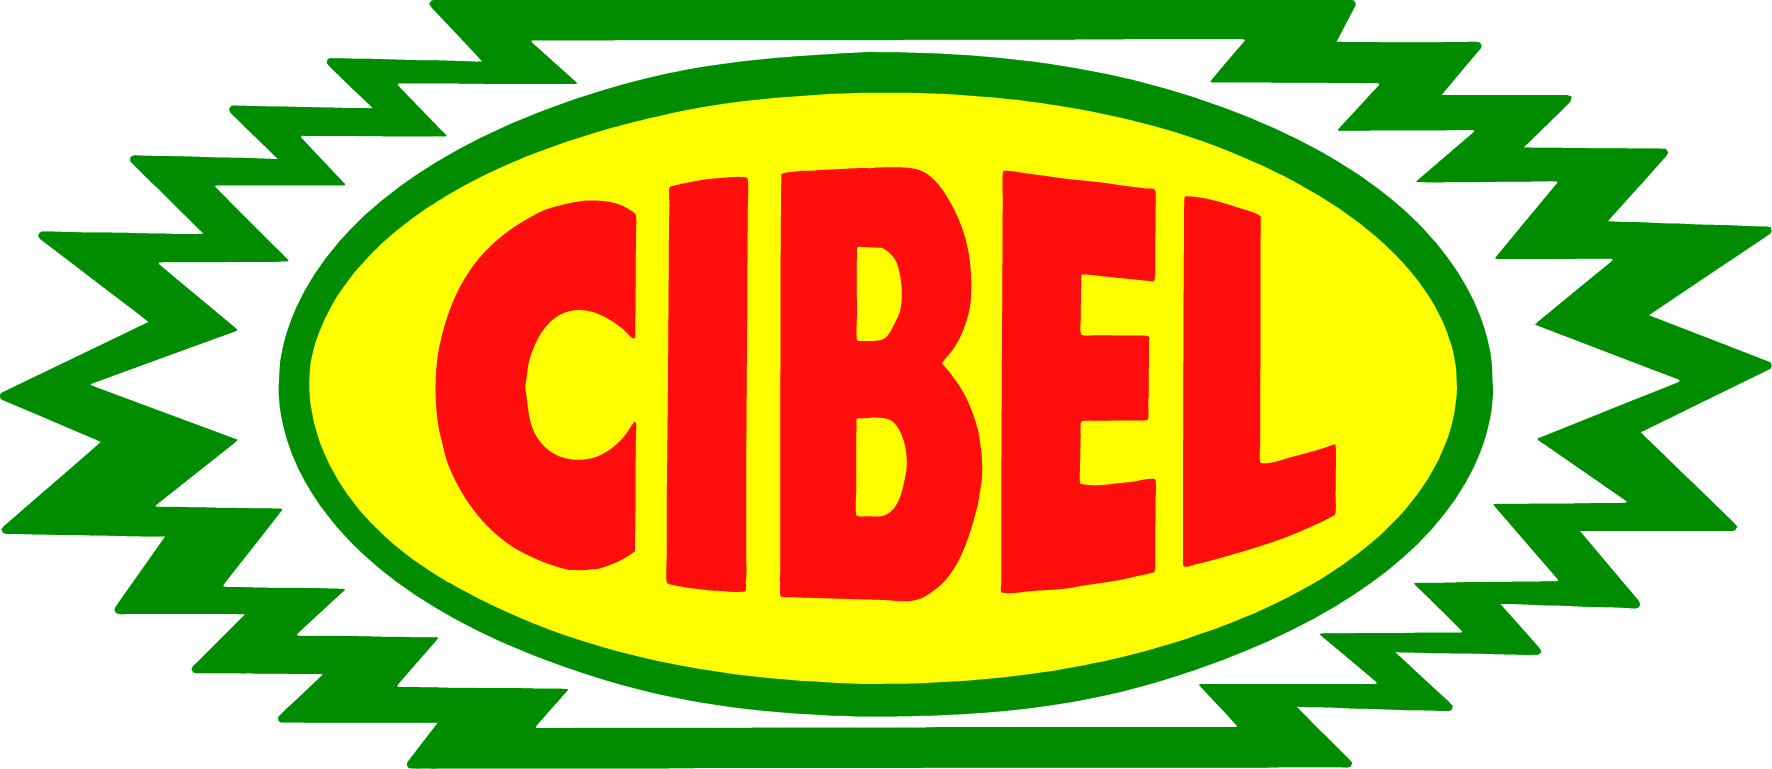 Image Gallery - Cibel: Cibel